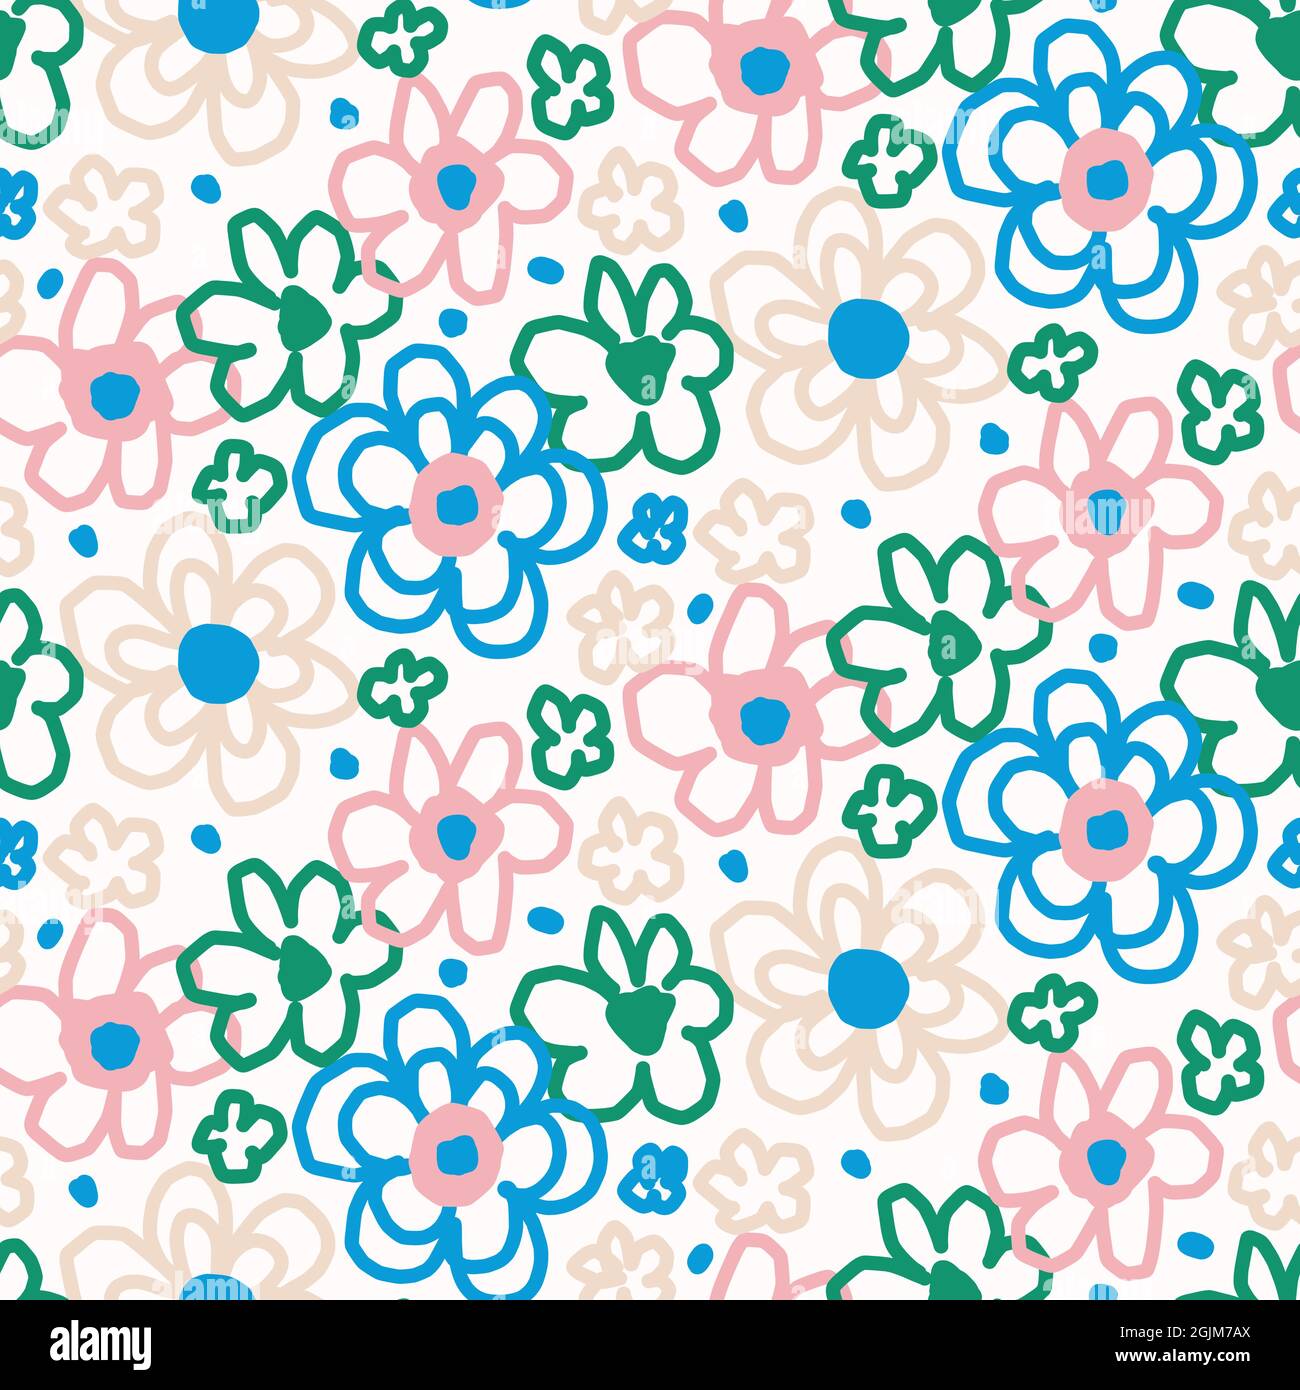 Spielerisch frisch Doodle florale Form nahtlosen Hintergrund. Modernes, modisches Muster im minimalistischen Retro-Stil. Handgezeichnetes einfaches farbenfrohes Design isoliert auf Stock Vektor